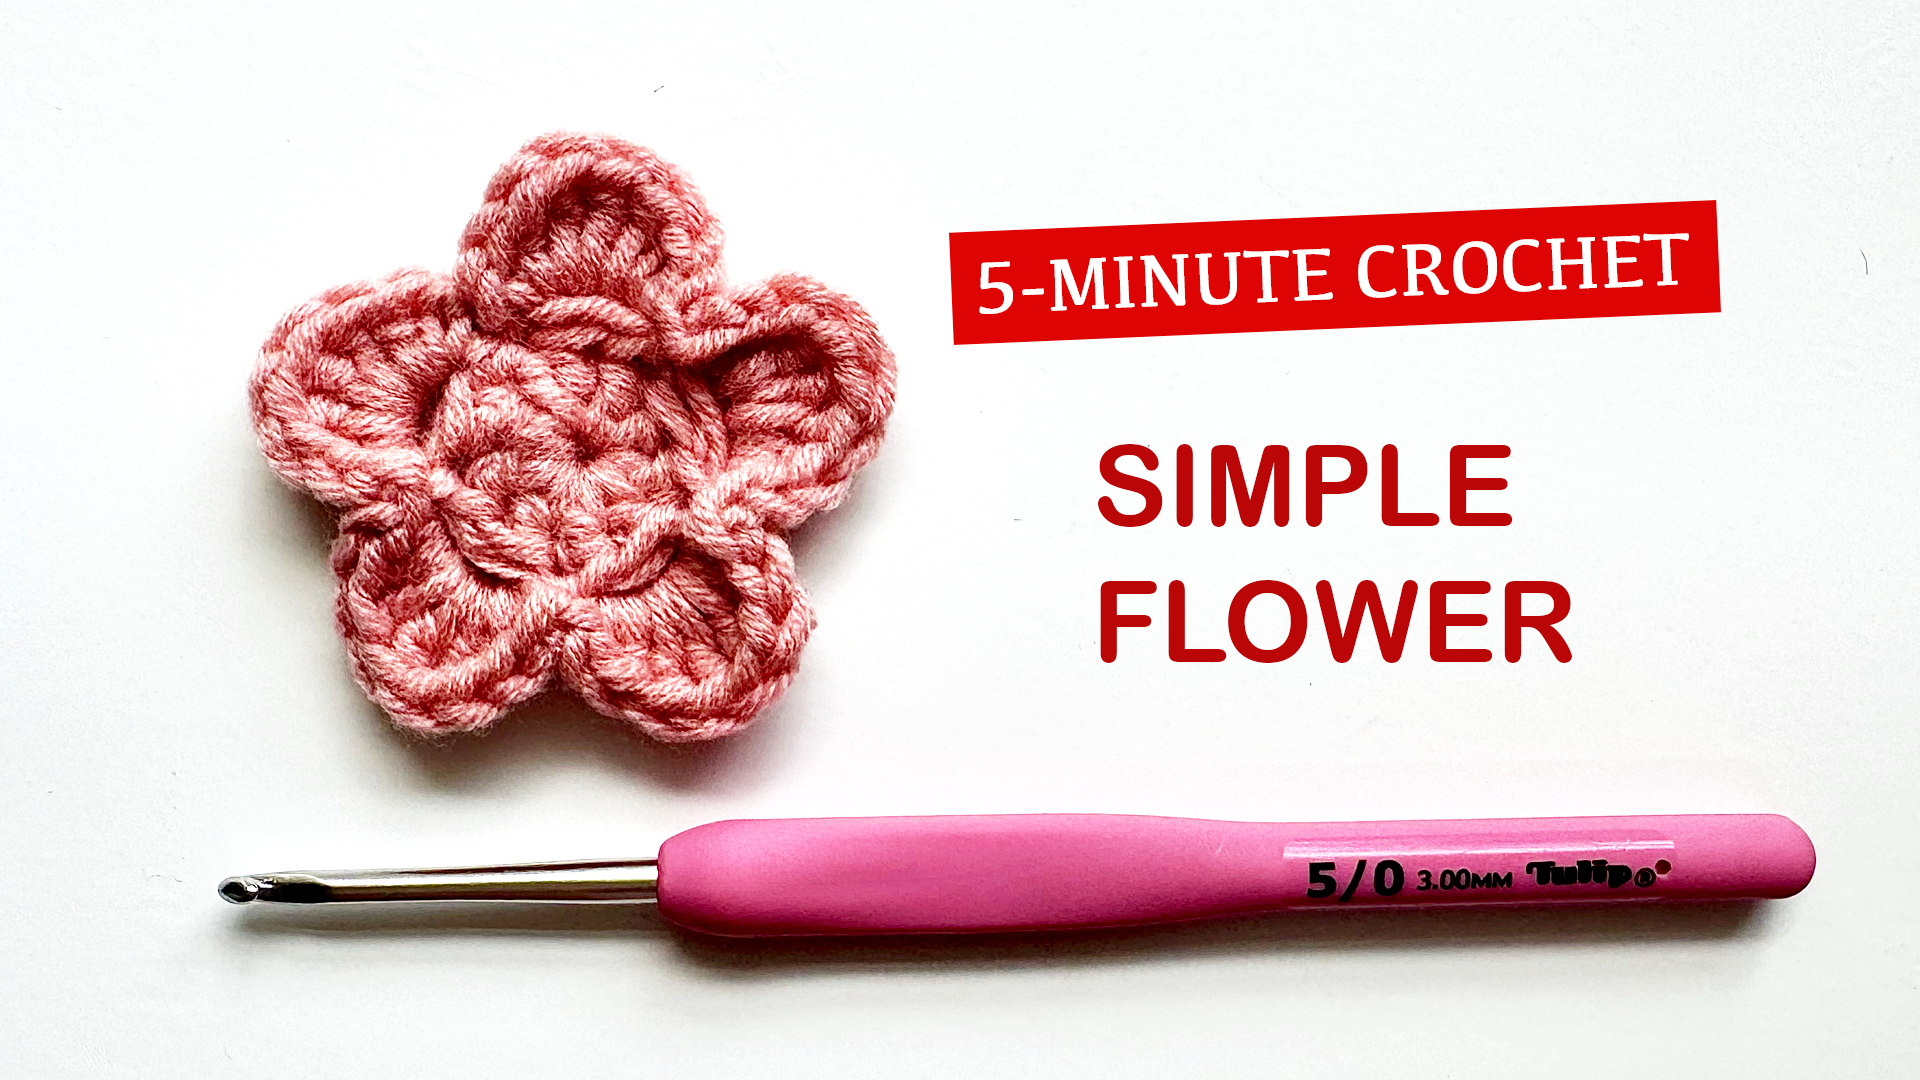 5-Minute Crochet: Simple Flower